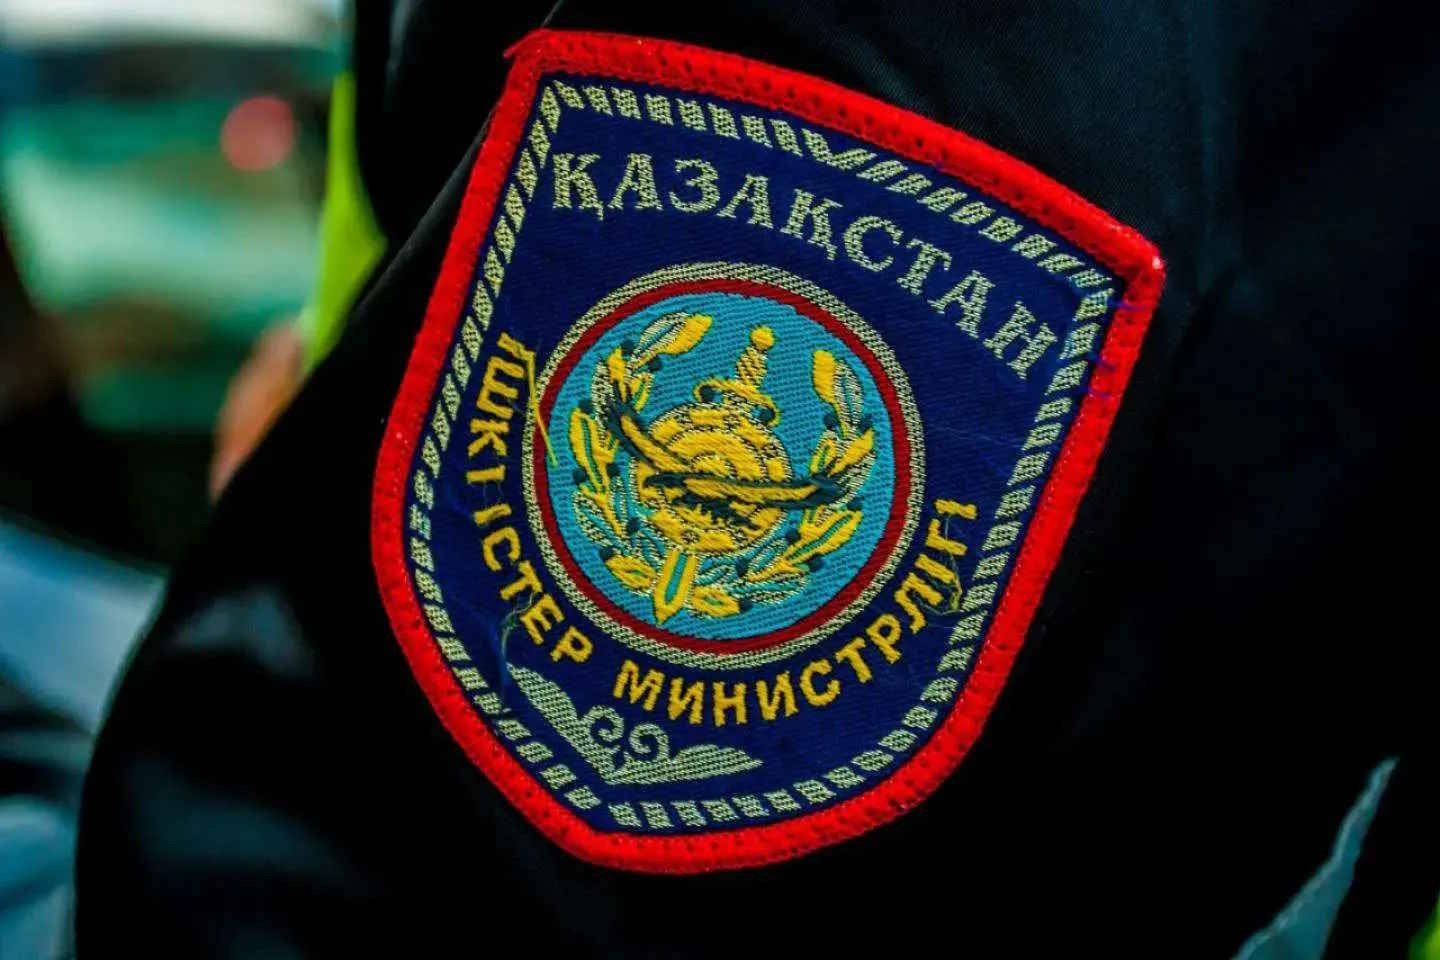 Происшествия в Казахстане и мире / Криминальные новости / В Таразе директор микрофинансовой организации ограбил свою фирму